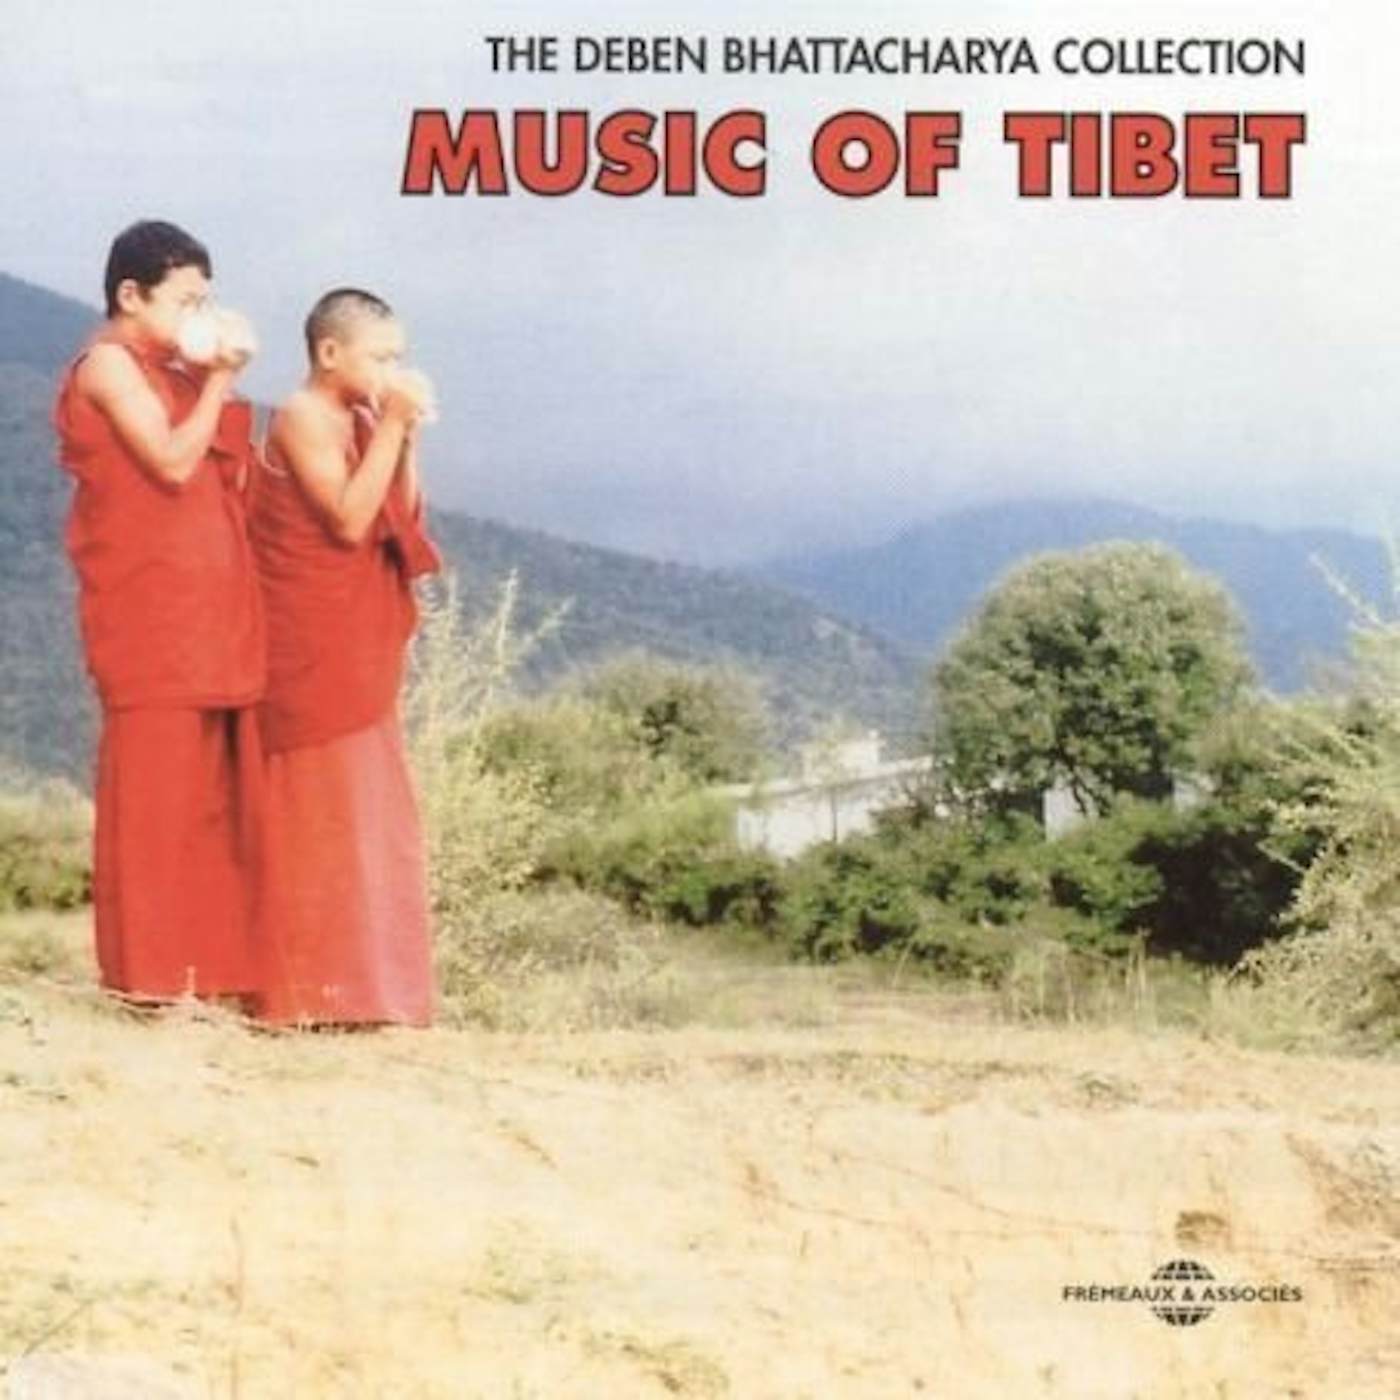 Deben Bhattacharya MUSIC OF TIBET CD